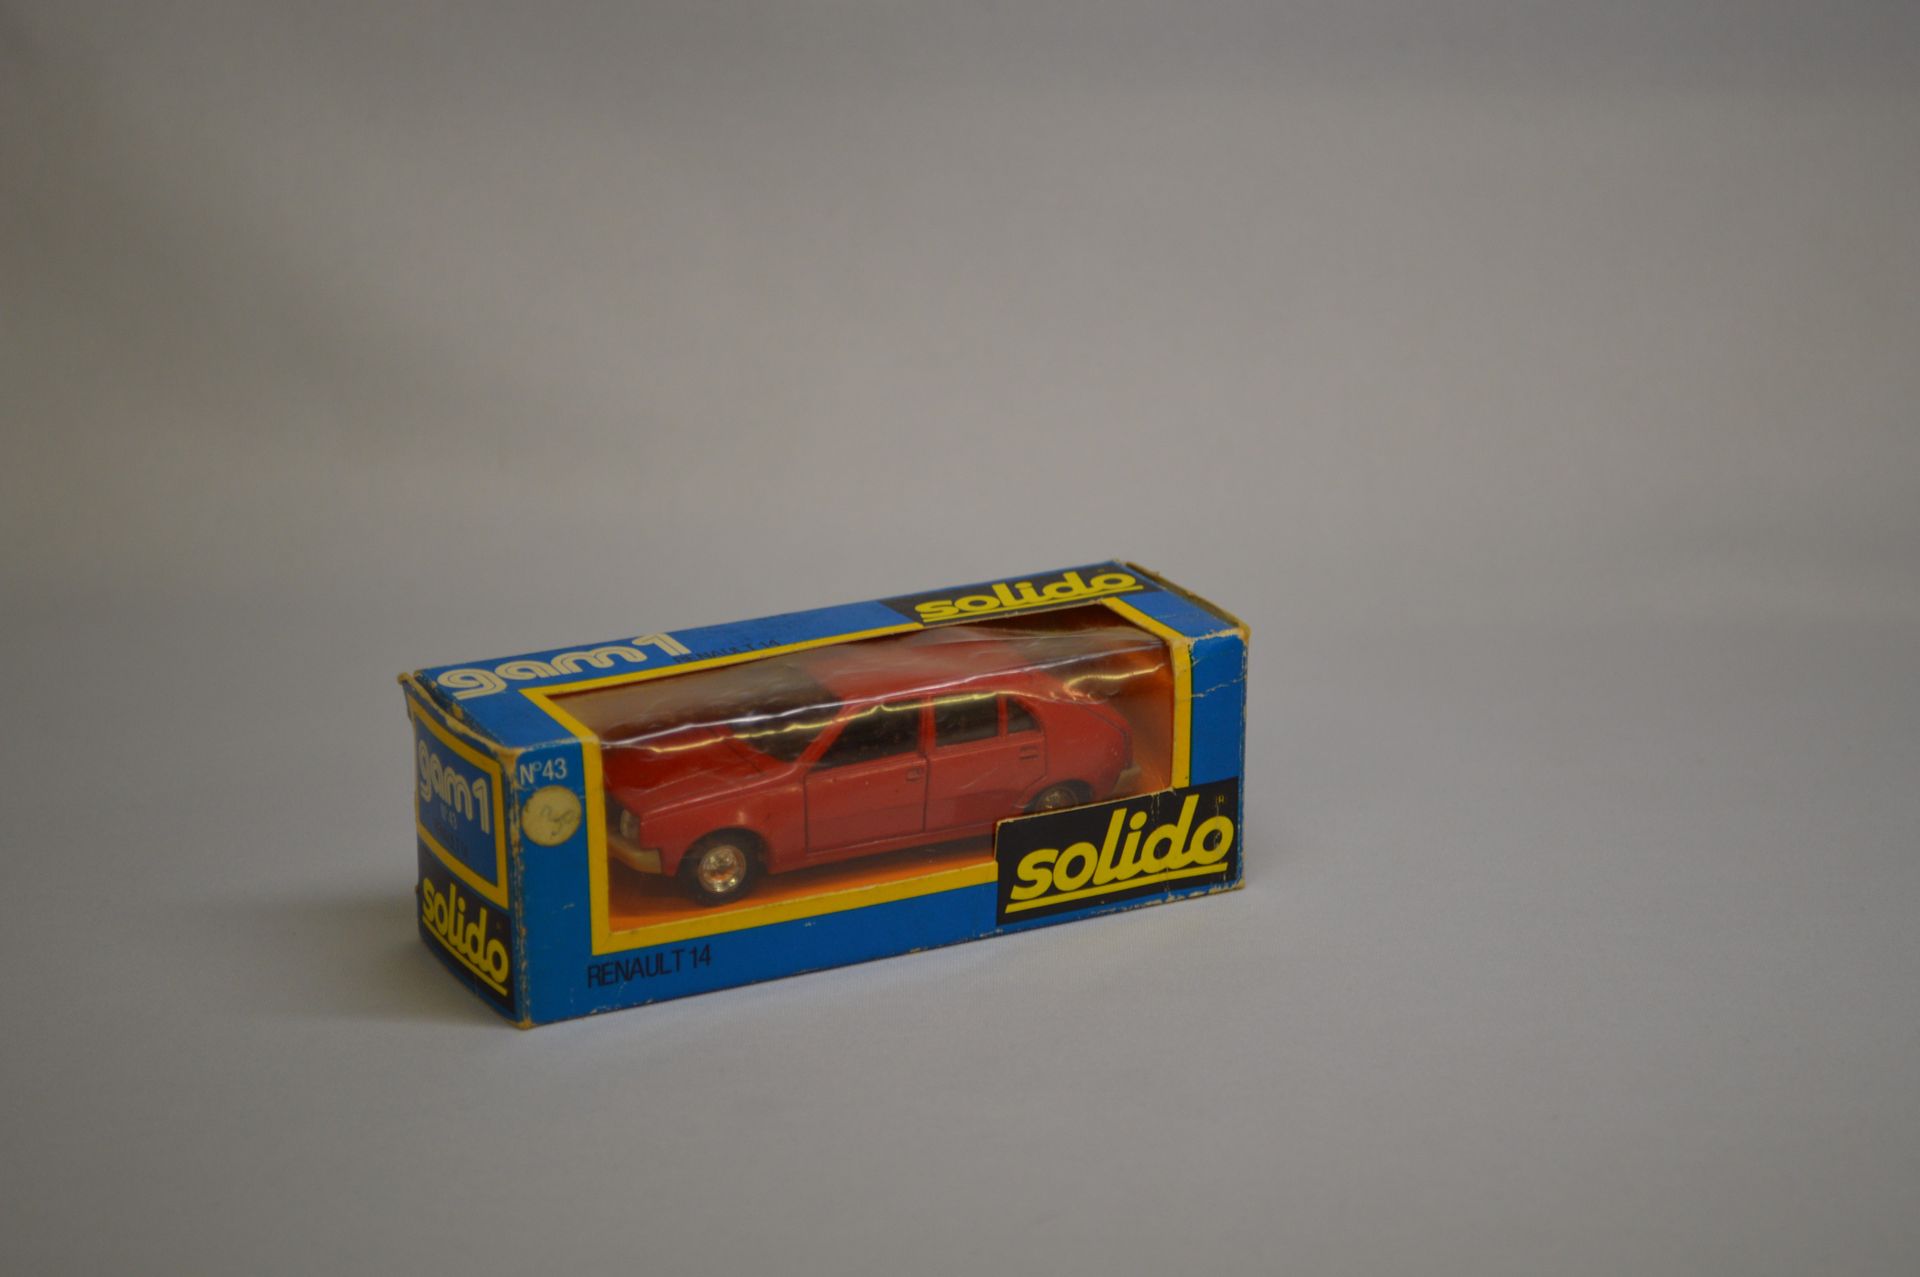 Null SOLIDO - GAM 1 - Coche de turismo : Renault 14, n°43, rojo.

Caja original.&hellip;